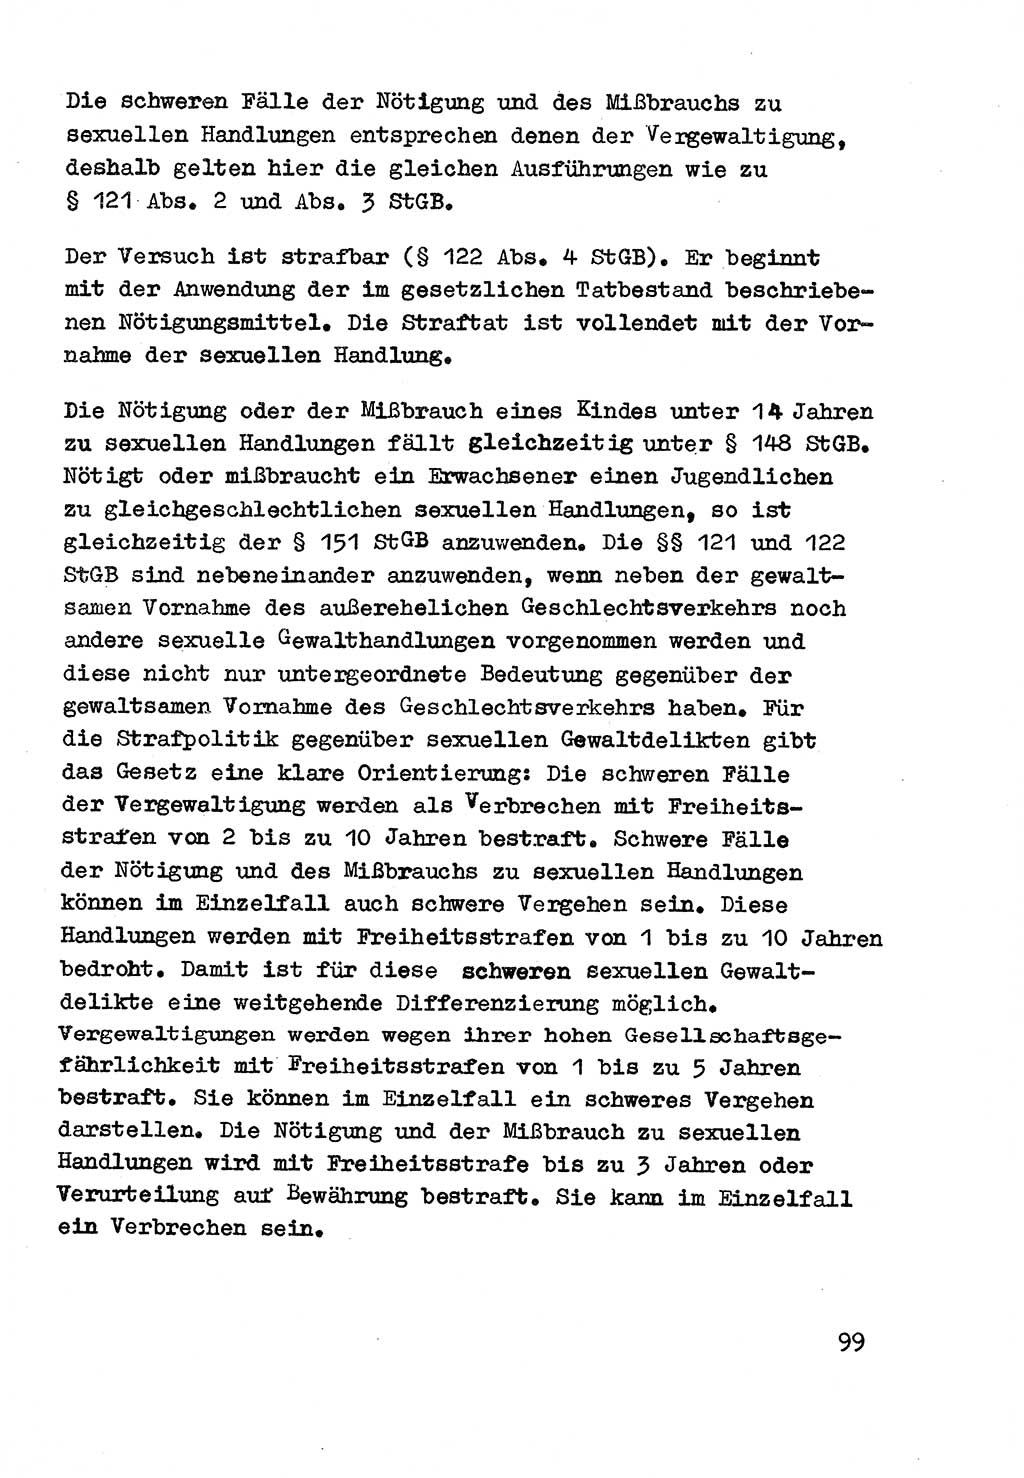 Strafrecht der DDR (Deutsche Demokratische Republik), Besonderer Teil, Lehrmaterial, Heft 3 1969, Seite 99 (Strafr. DDR BT Lehrmat. H. 3 1969, S. 99)